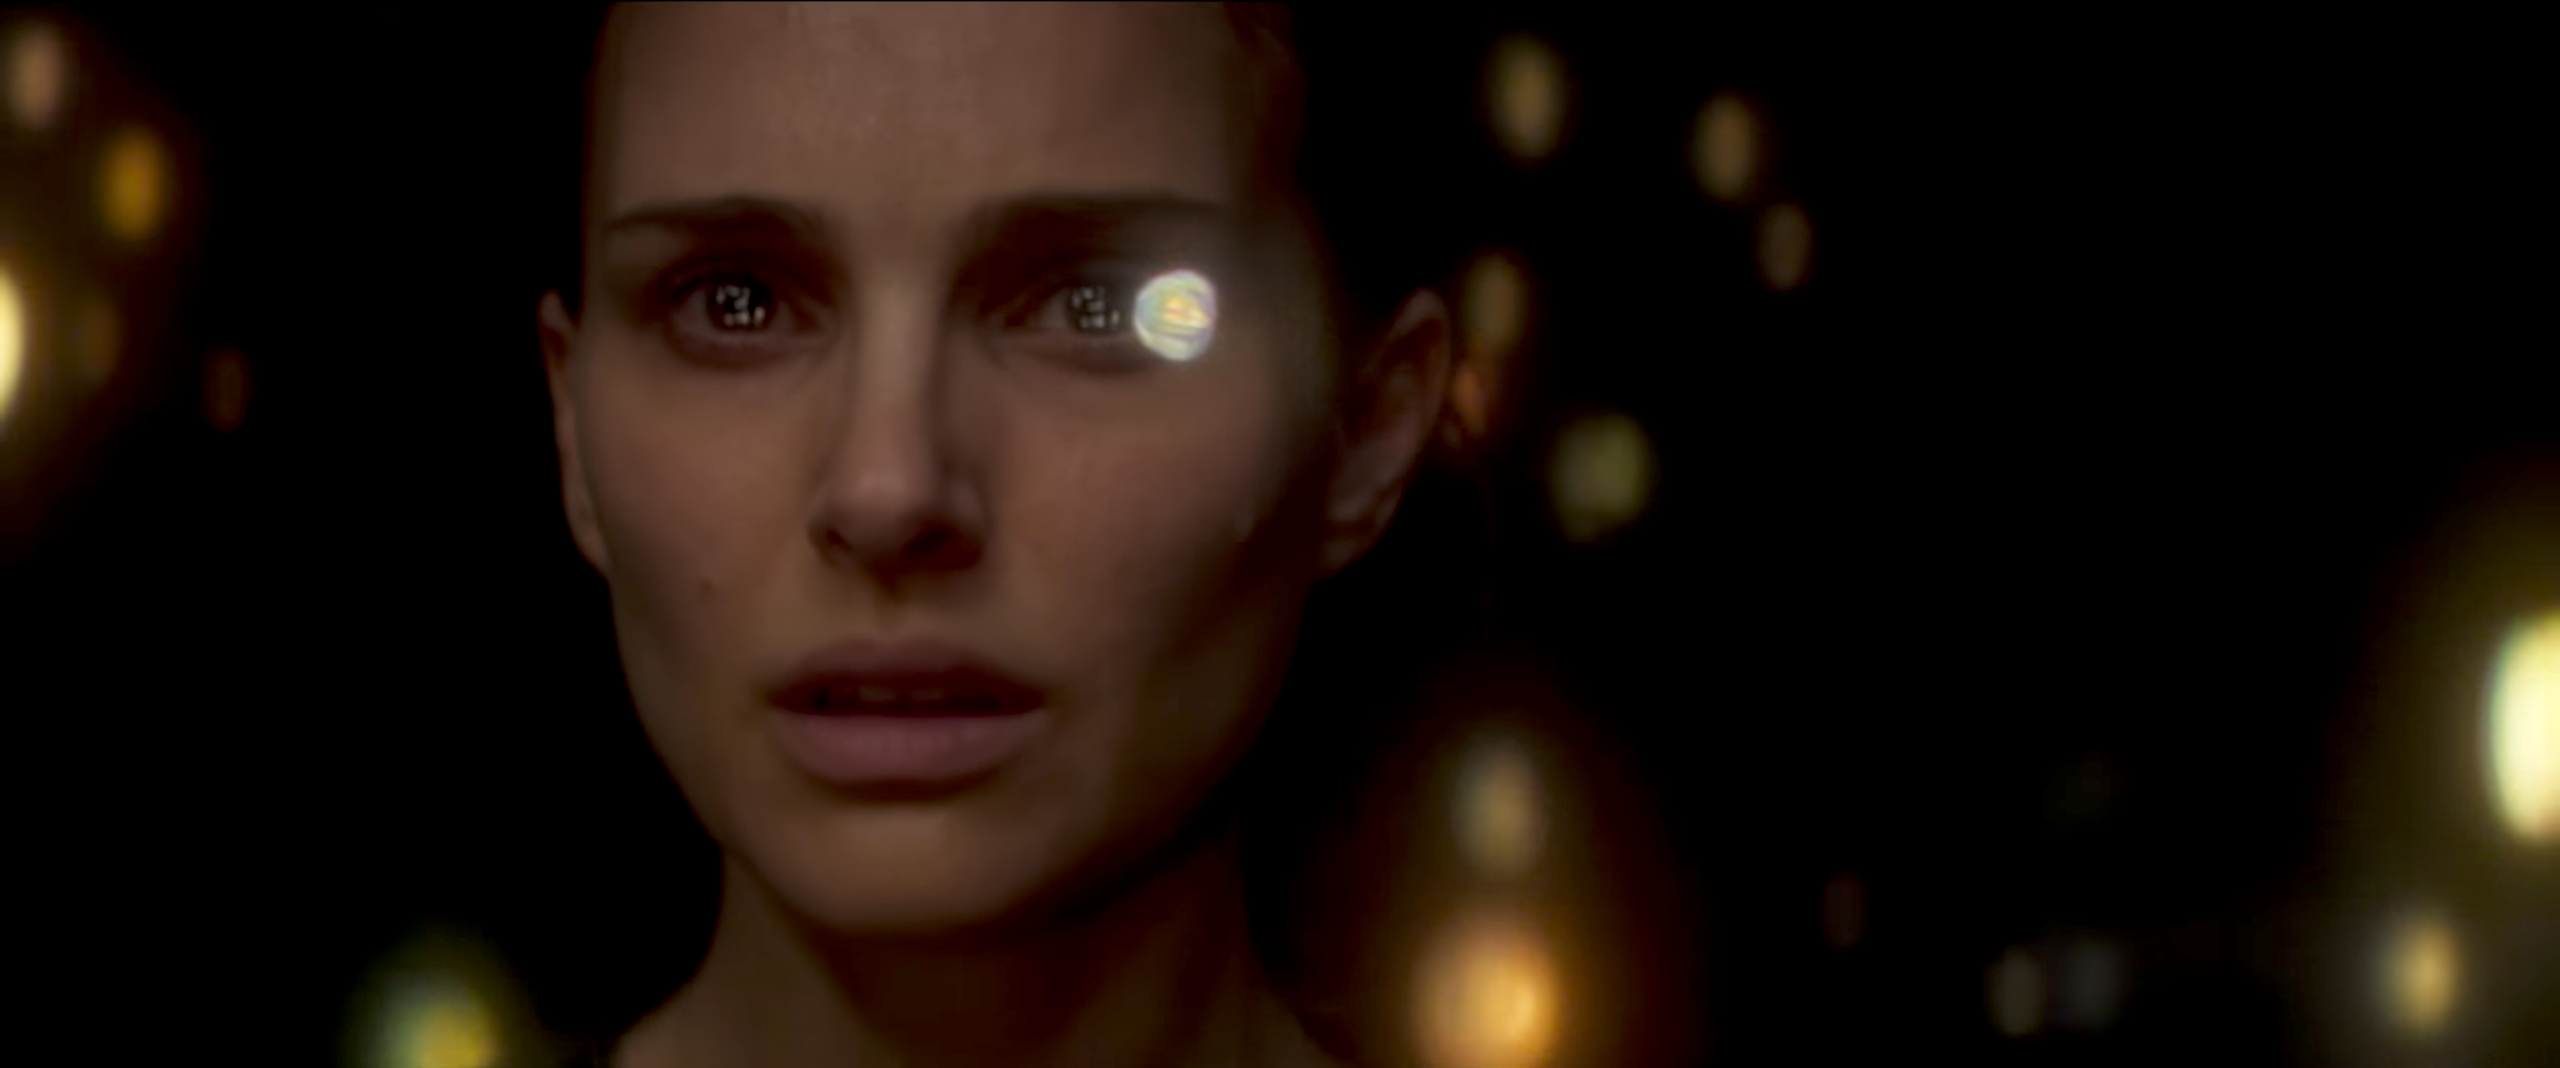 Natalie Portman in Annihilation Sci-Fi Movie 2018